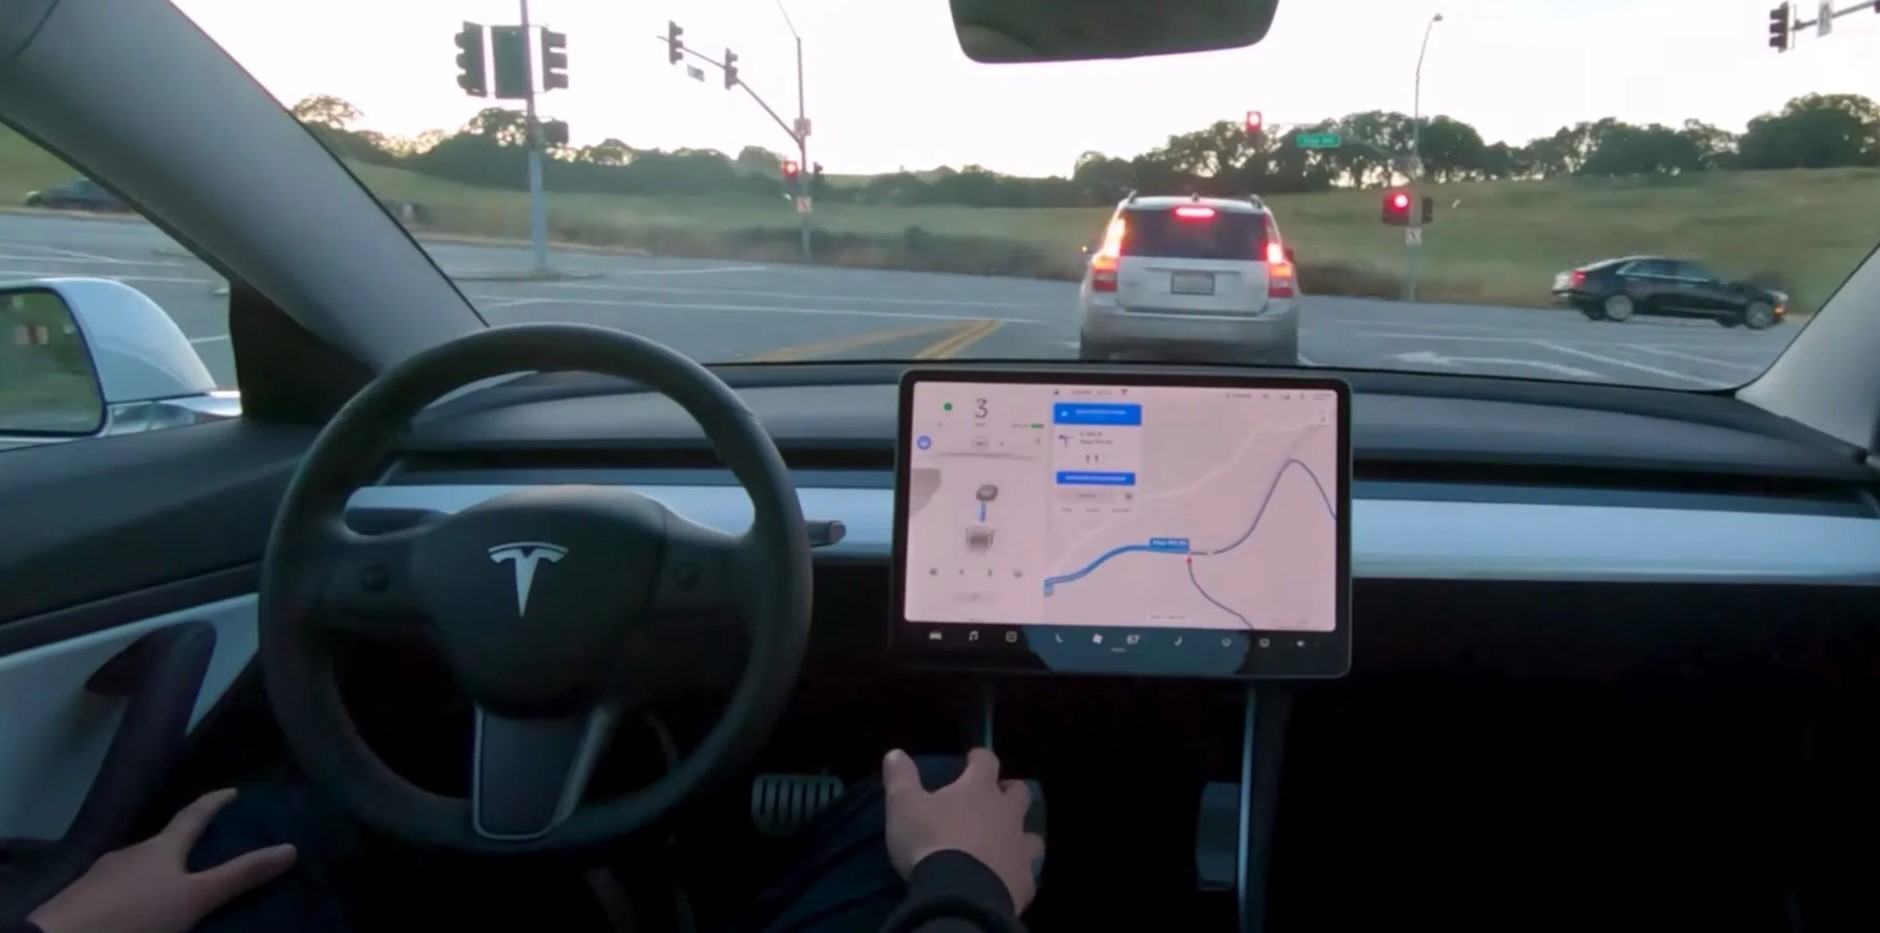 Η Tesla λανσάρει τη συνδρομή Full Self Driving για $199 το μήνα